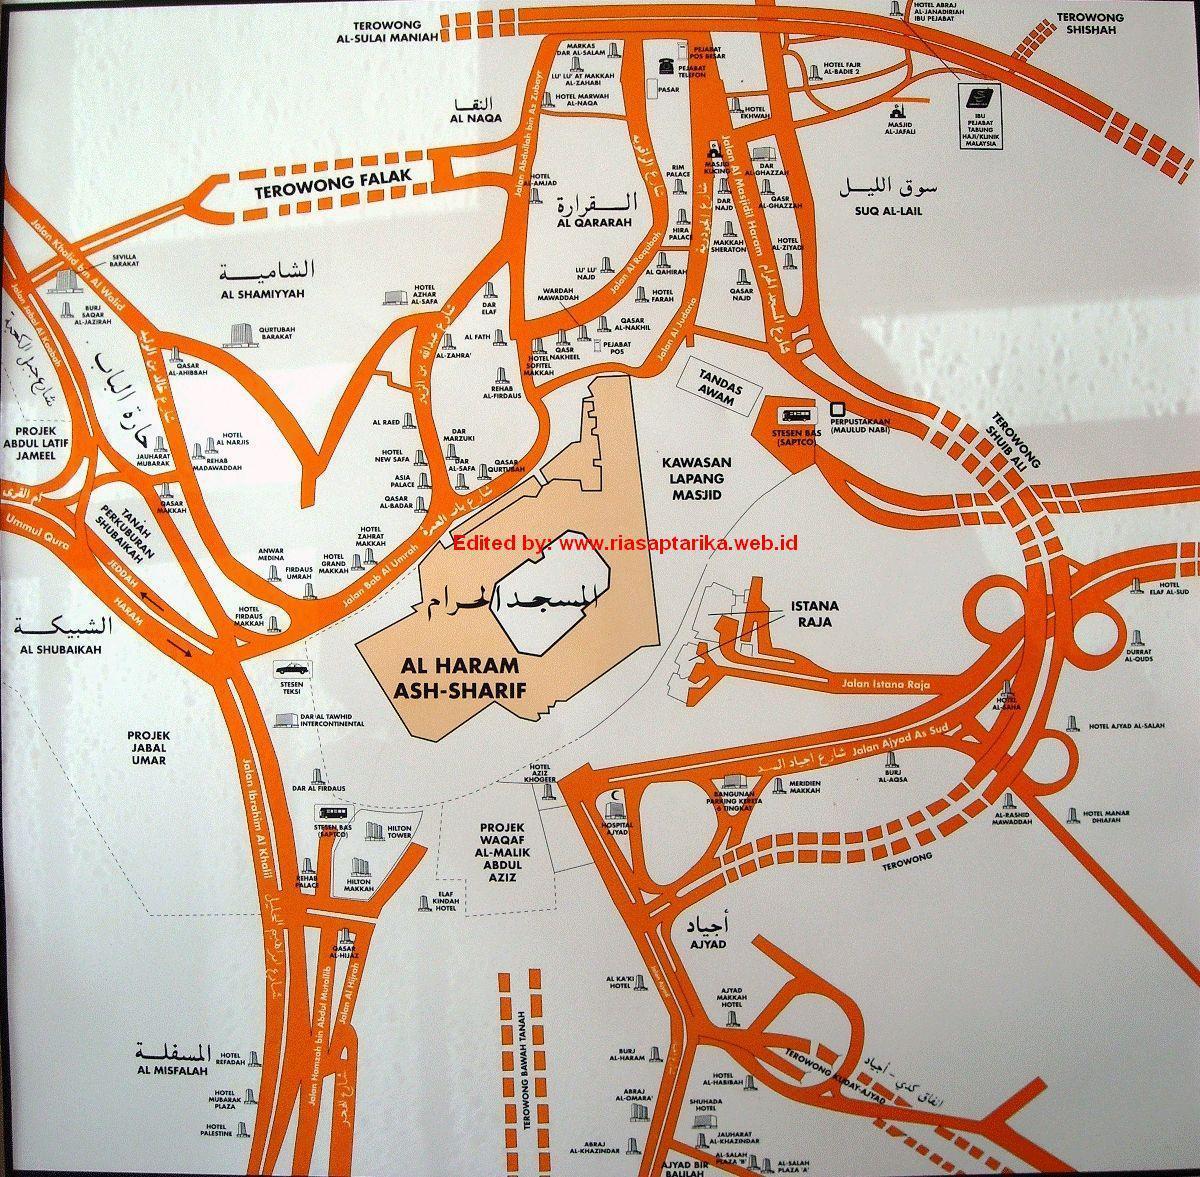 რუკა misfalah Makkah რუკა